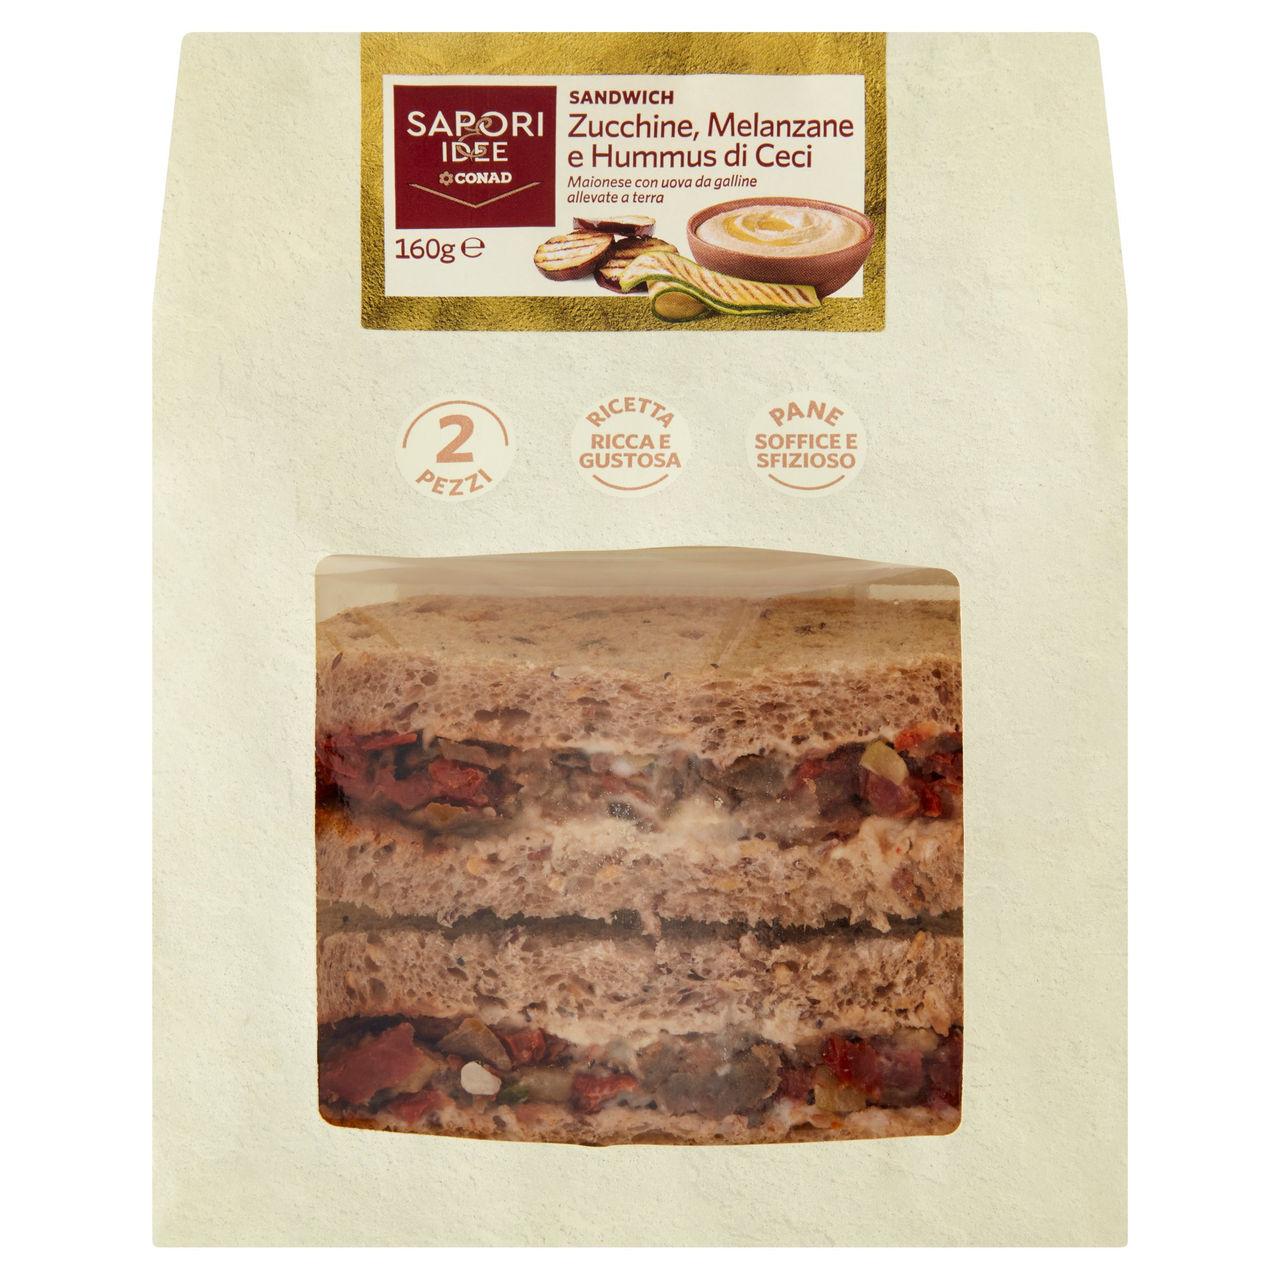 SAPORI & IDEE CONAD Sandwich Zucchine, Melanzane e Hummus di Ceci 2 Pezzi 160 g